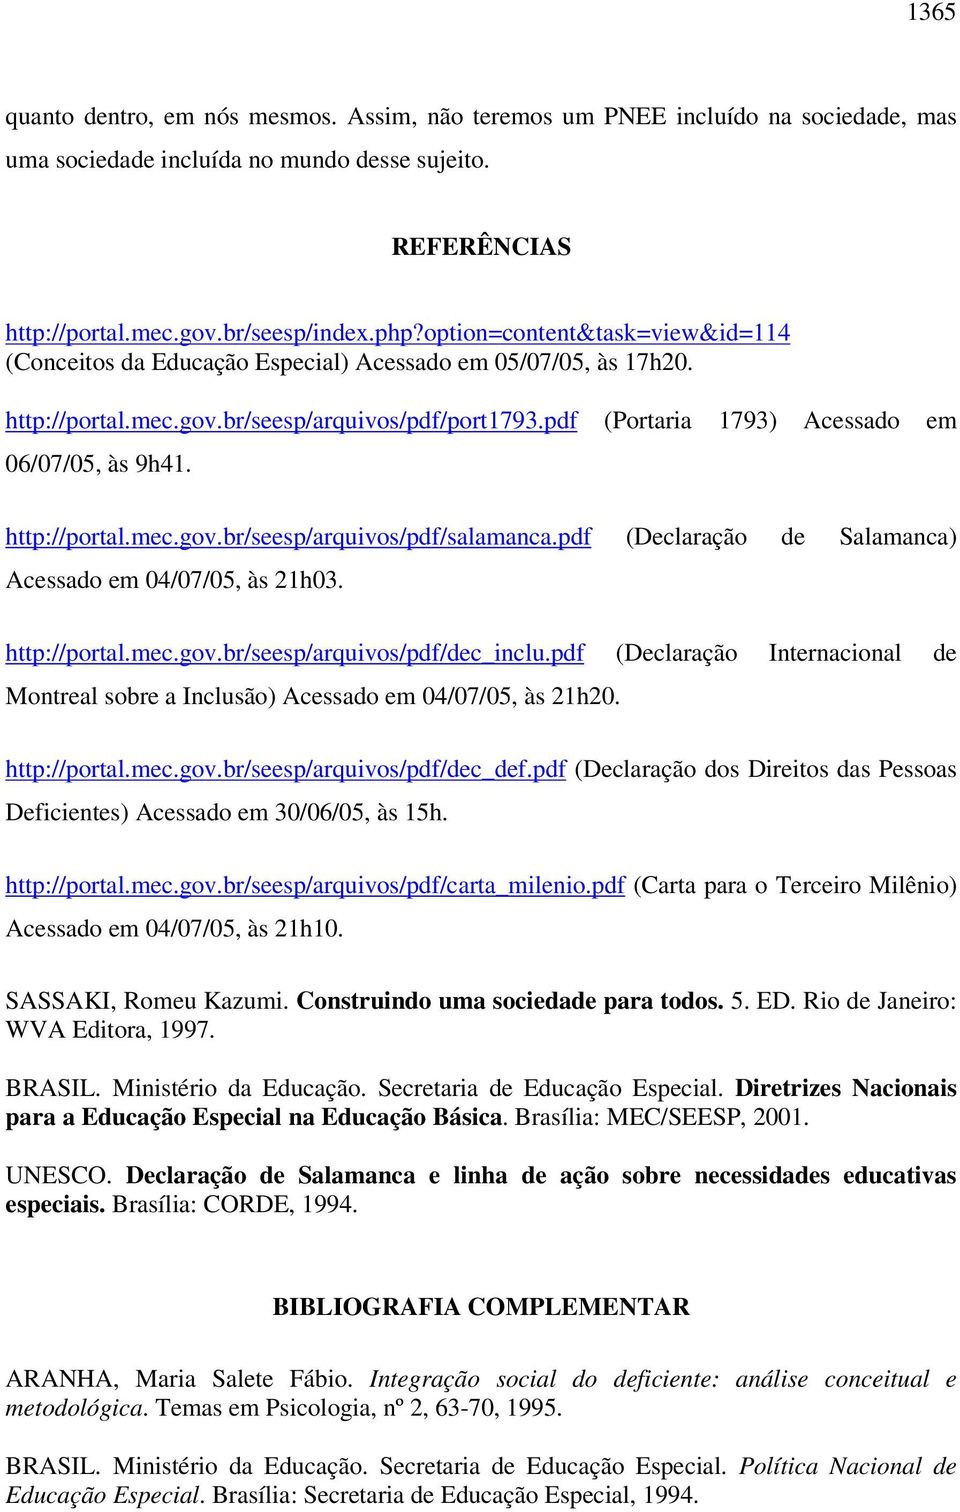 http://portal.mec.gov.br/seesp/arquivos/pdf/salamanca.pdf (Declaração de Salamanca) Acessado em 04/07/05, às 21h03. http://portal.mec.gov.br/seesp/arquivos/pdf/dec_inclu.